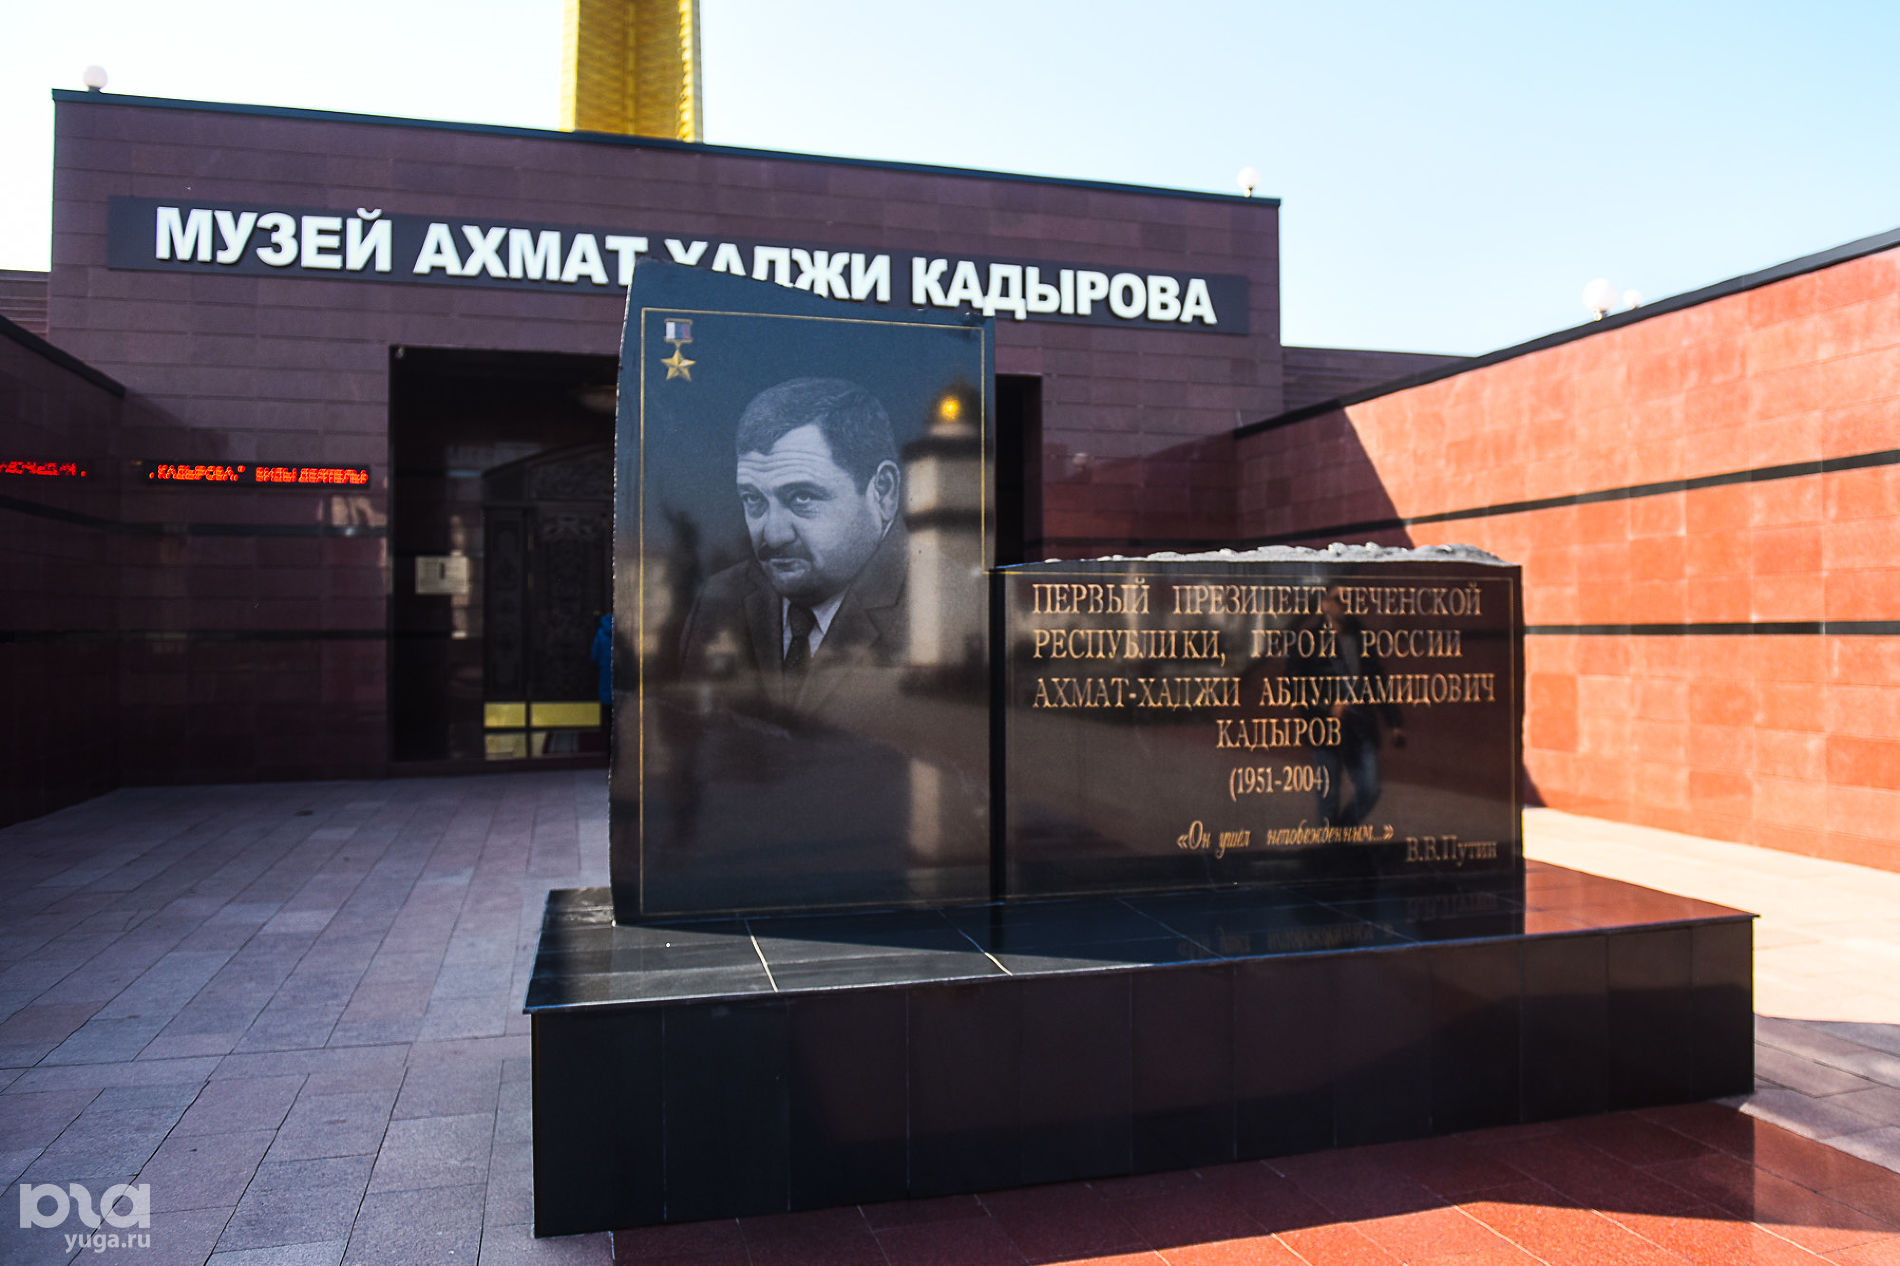 Музей имени Ахмата-Хаджи Кадырова